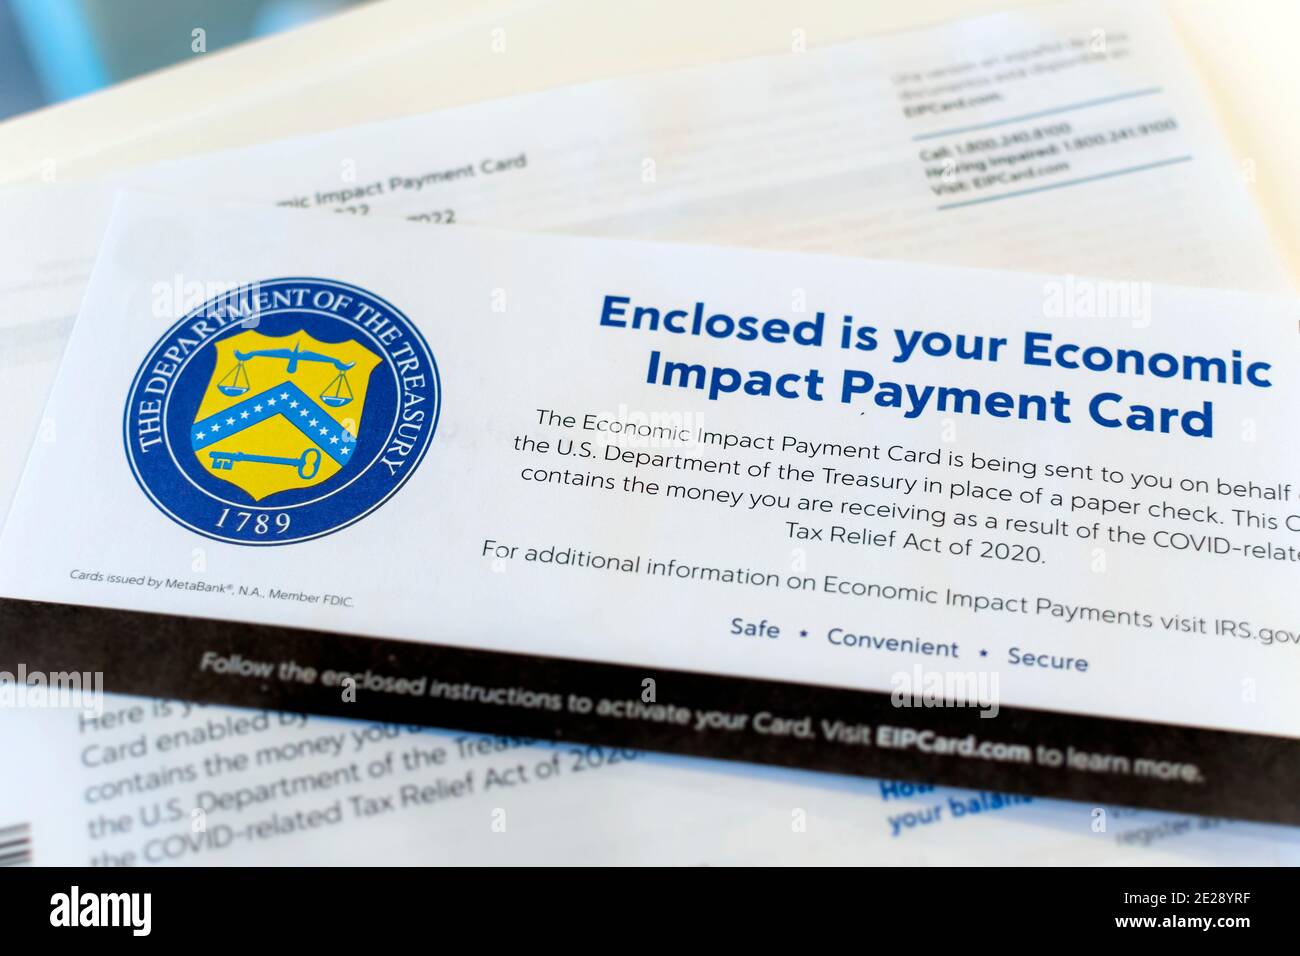 Primo piano della lettera del Dipartimento del Tesoro degli Stati Uniti che accompagna la carta di pagamento di impatto economico a causa della pandemia COVID-19. Foto Stock